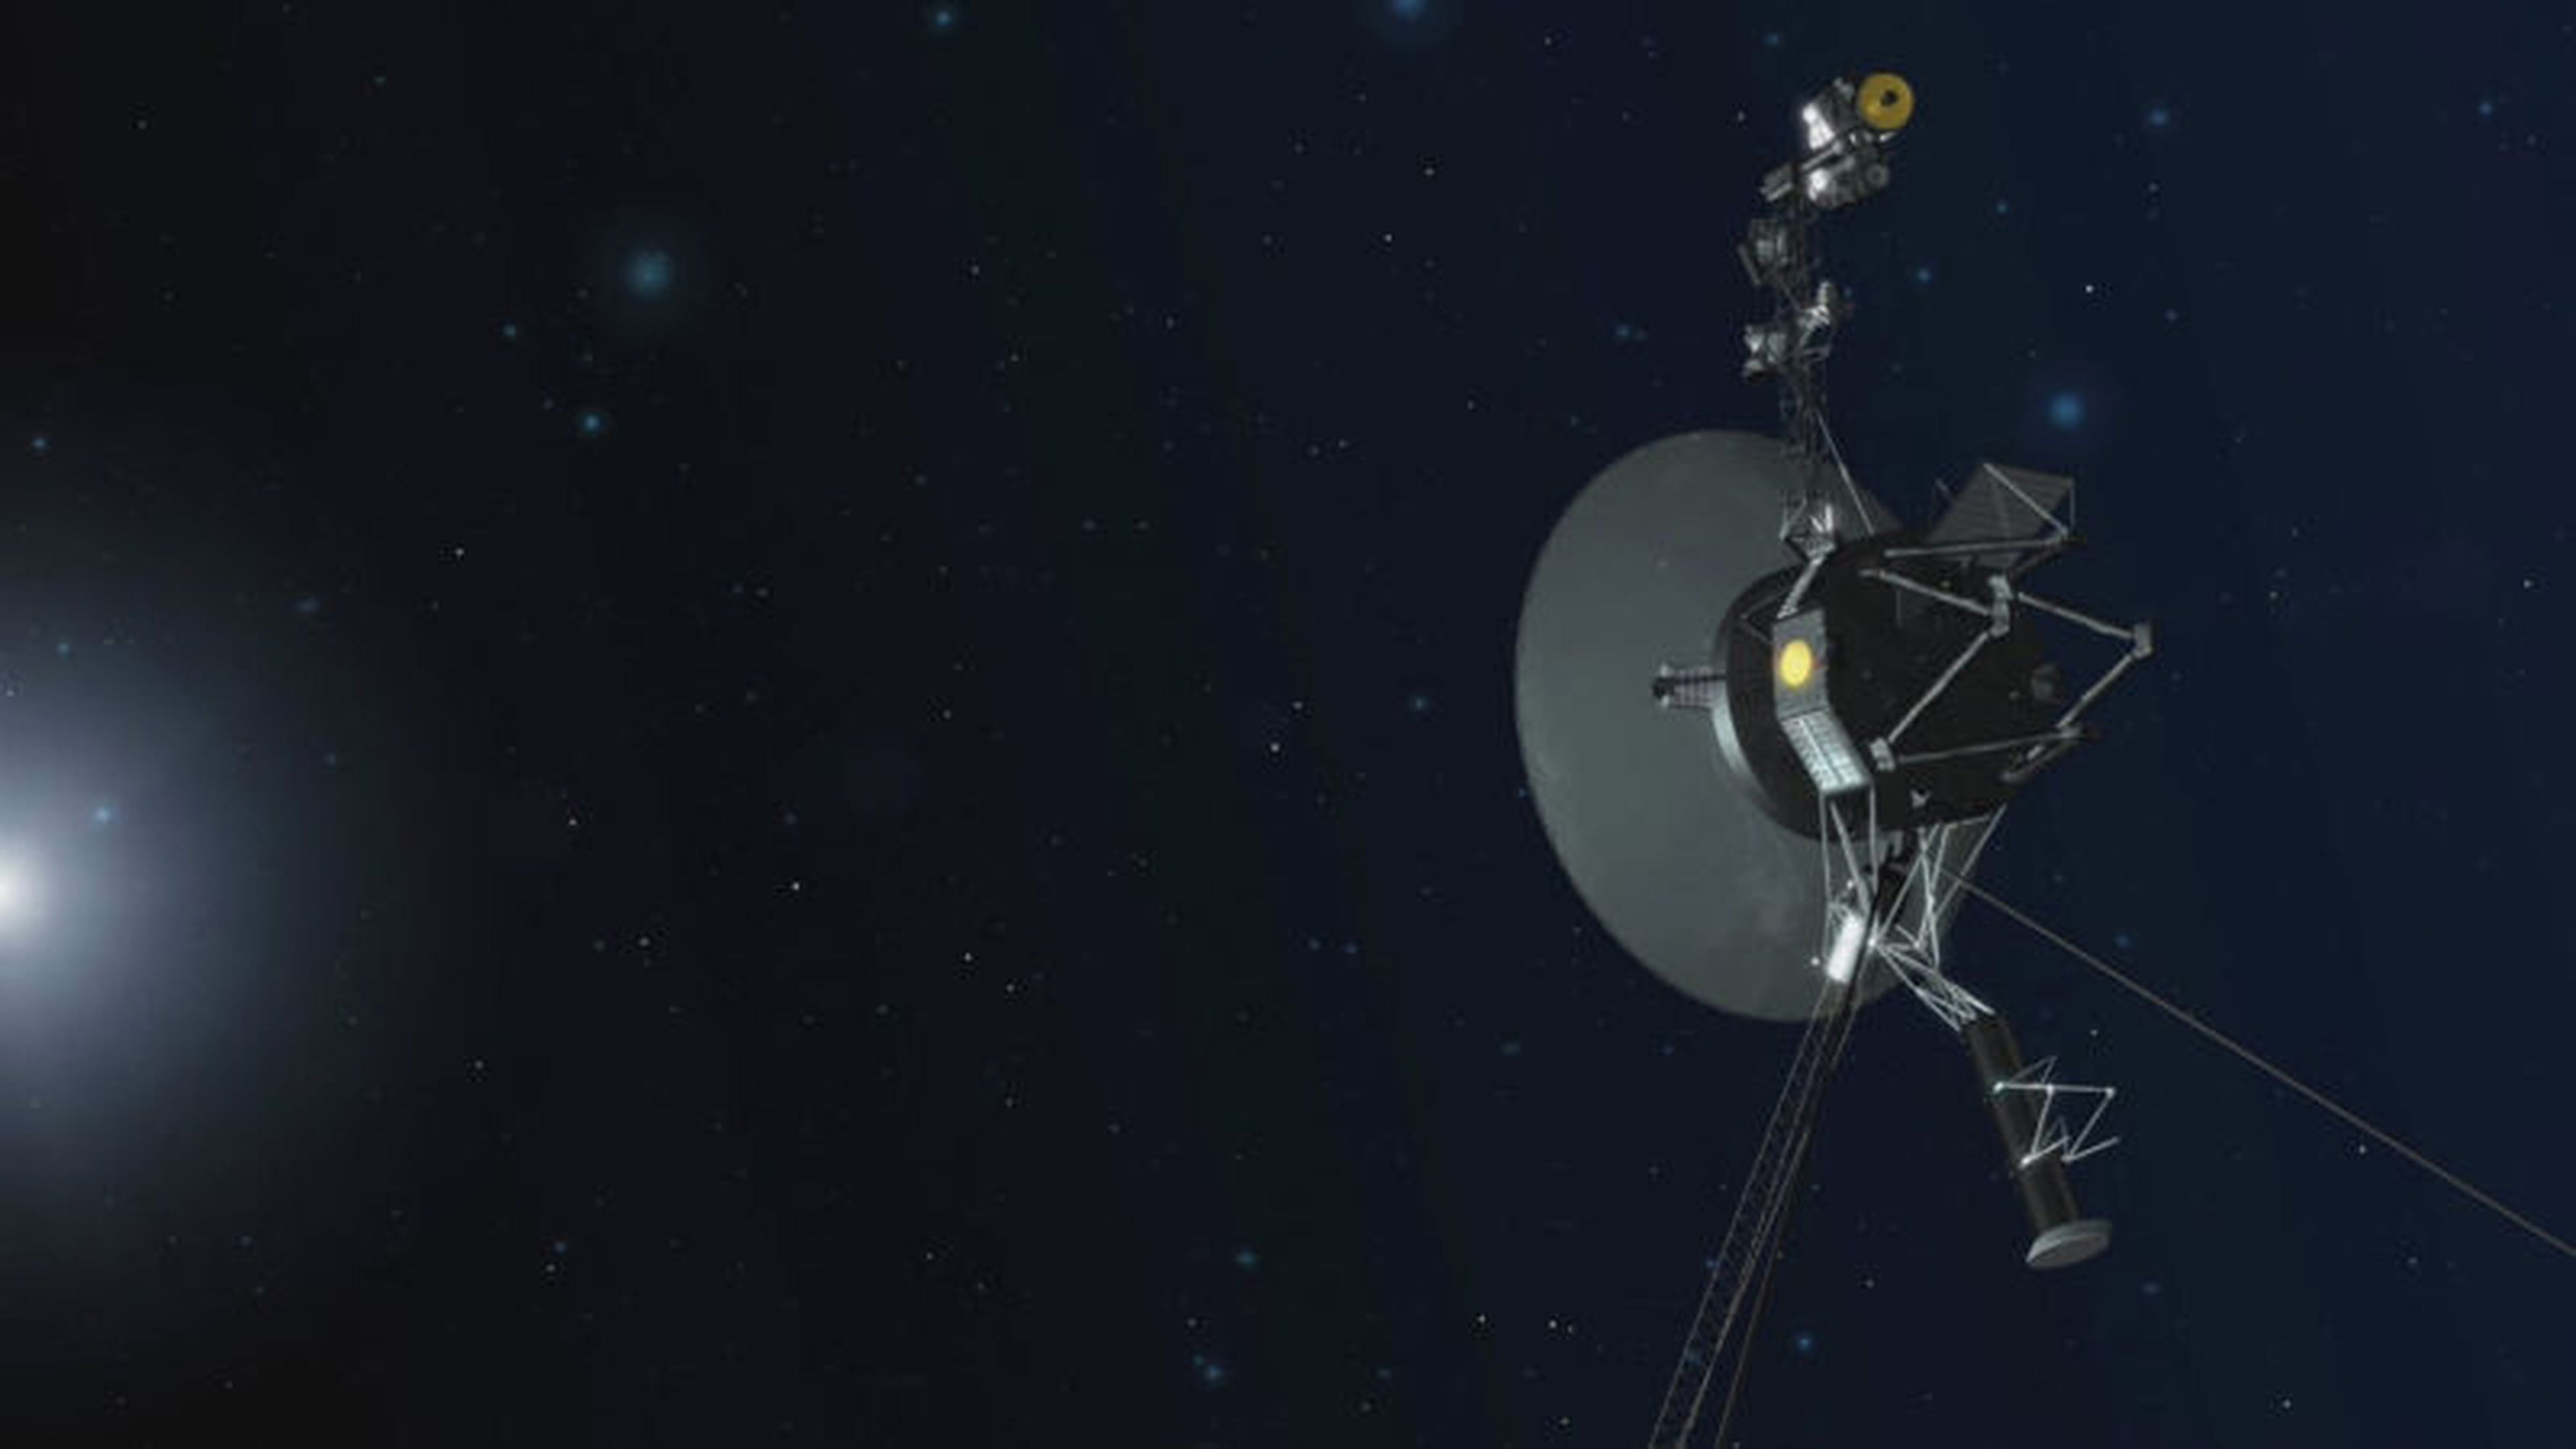 La sonda Voyager 1 reactiva sus propulsores tras 37 años inactivos